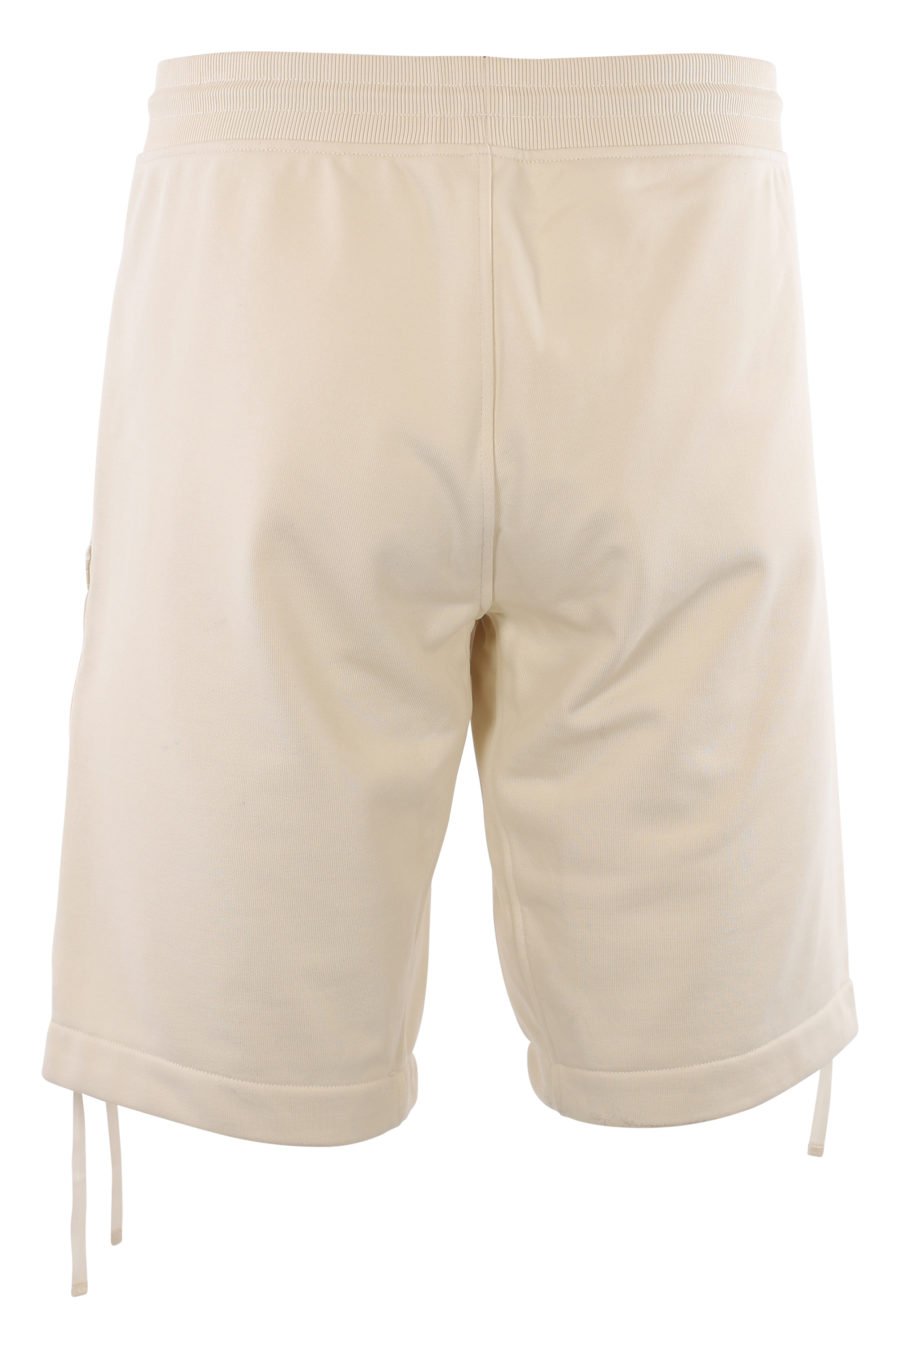 Pantalón corto de color natural con bolsillos - IMG 2012